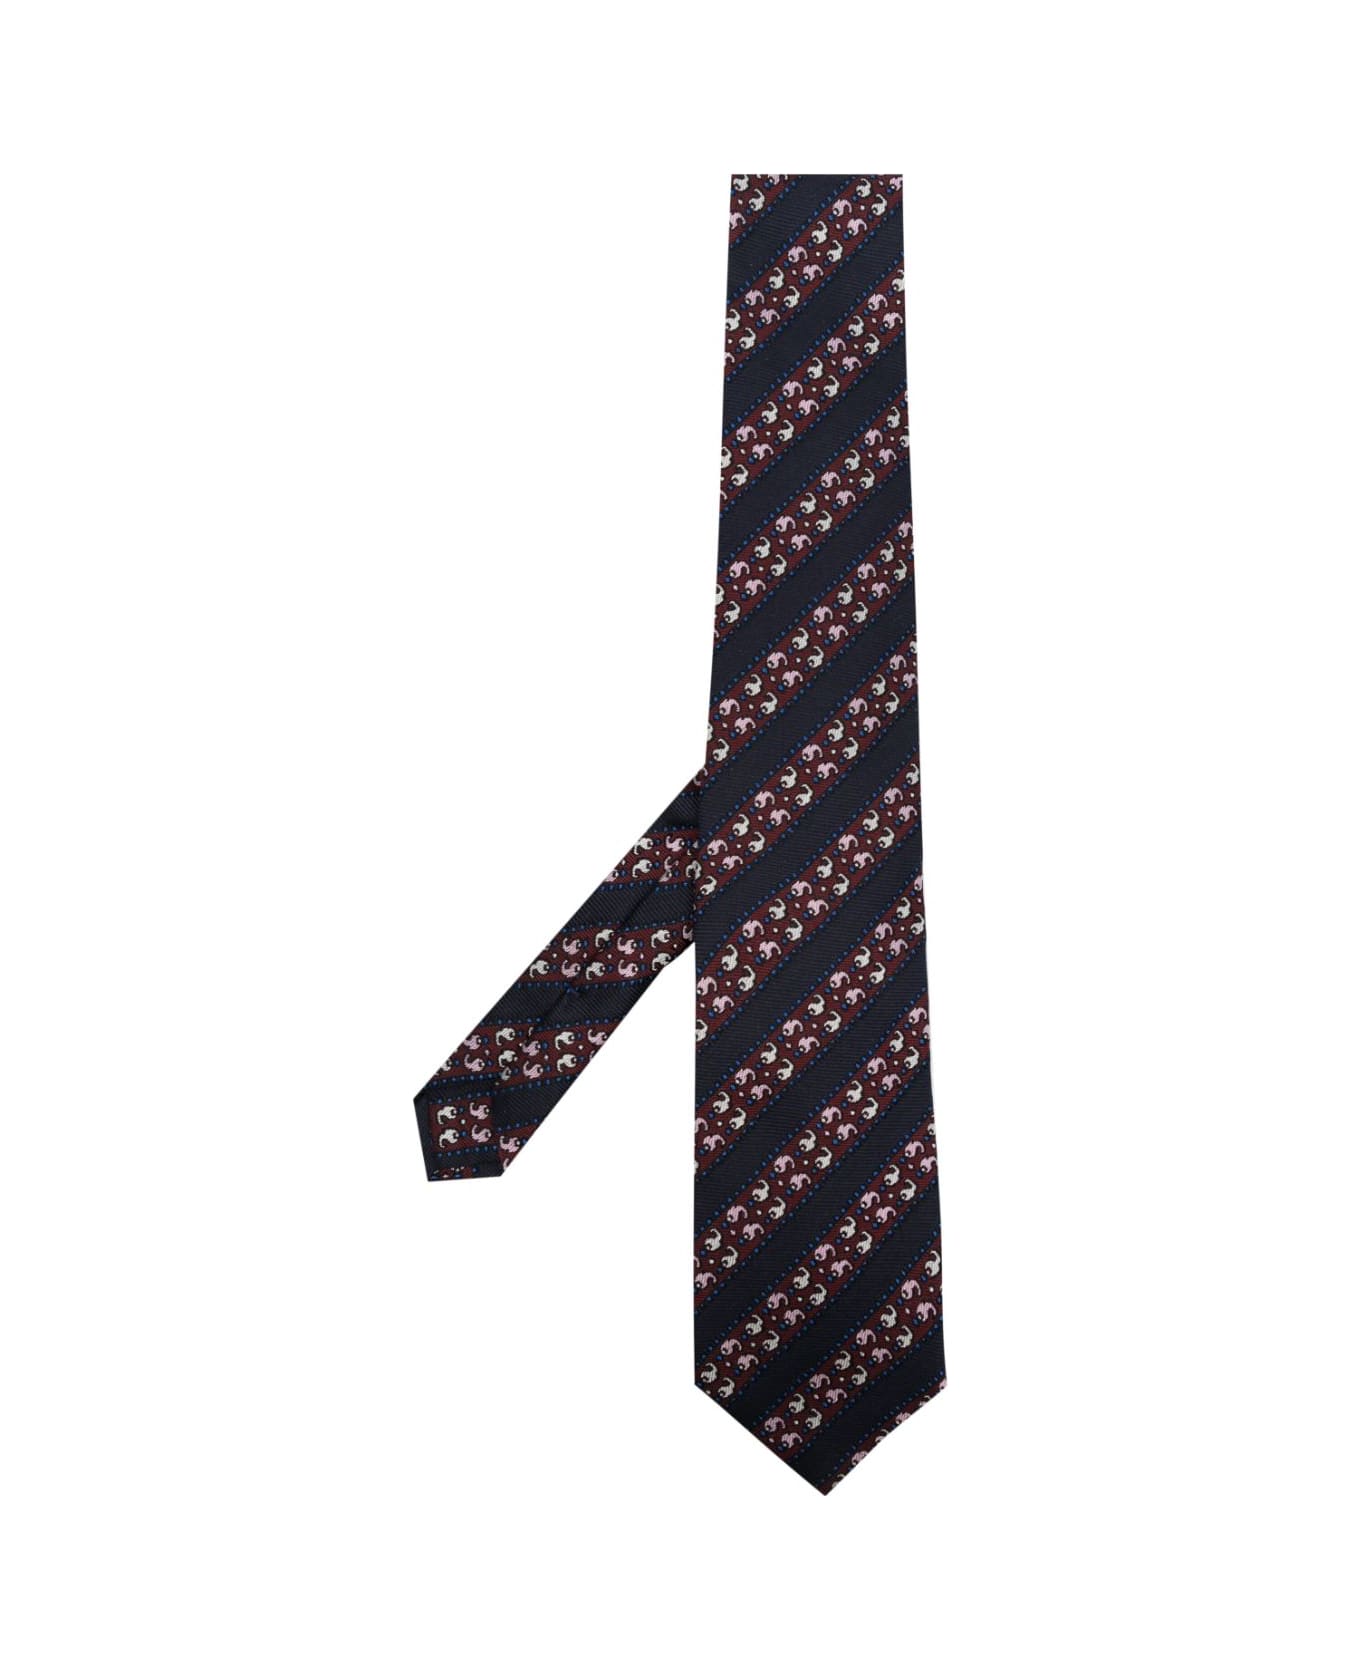 Etro 8 Cm Tie - Black ネクタイ